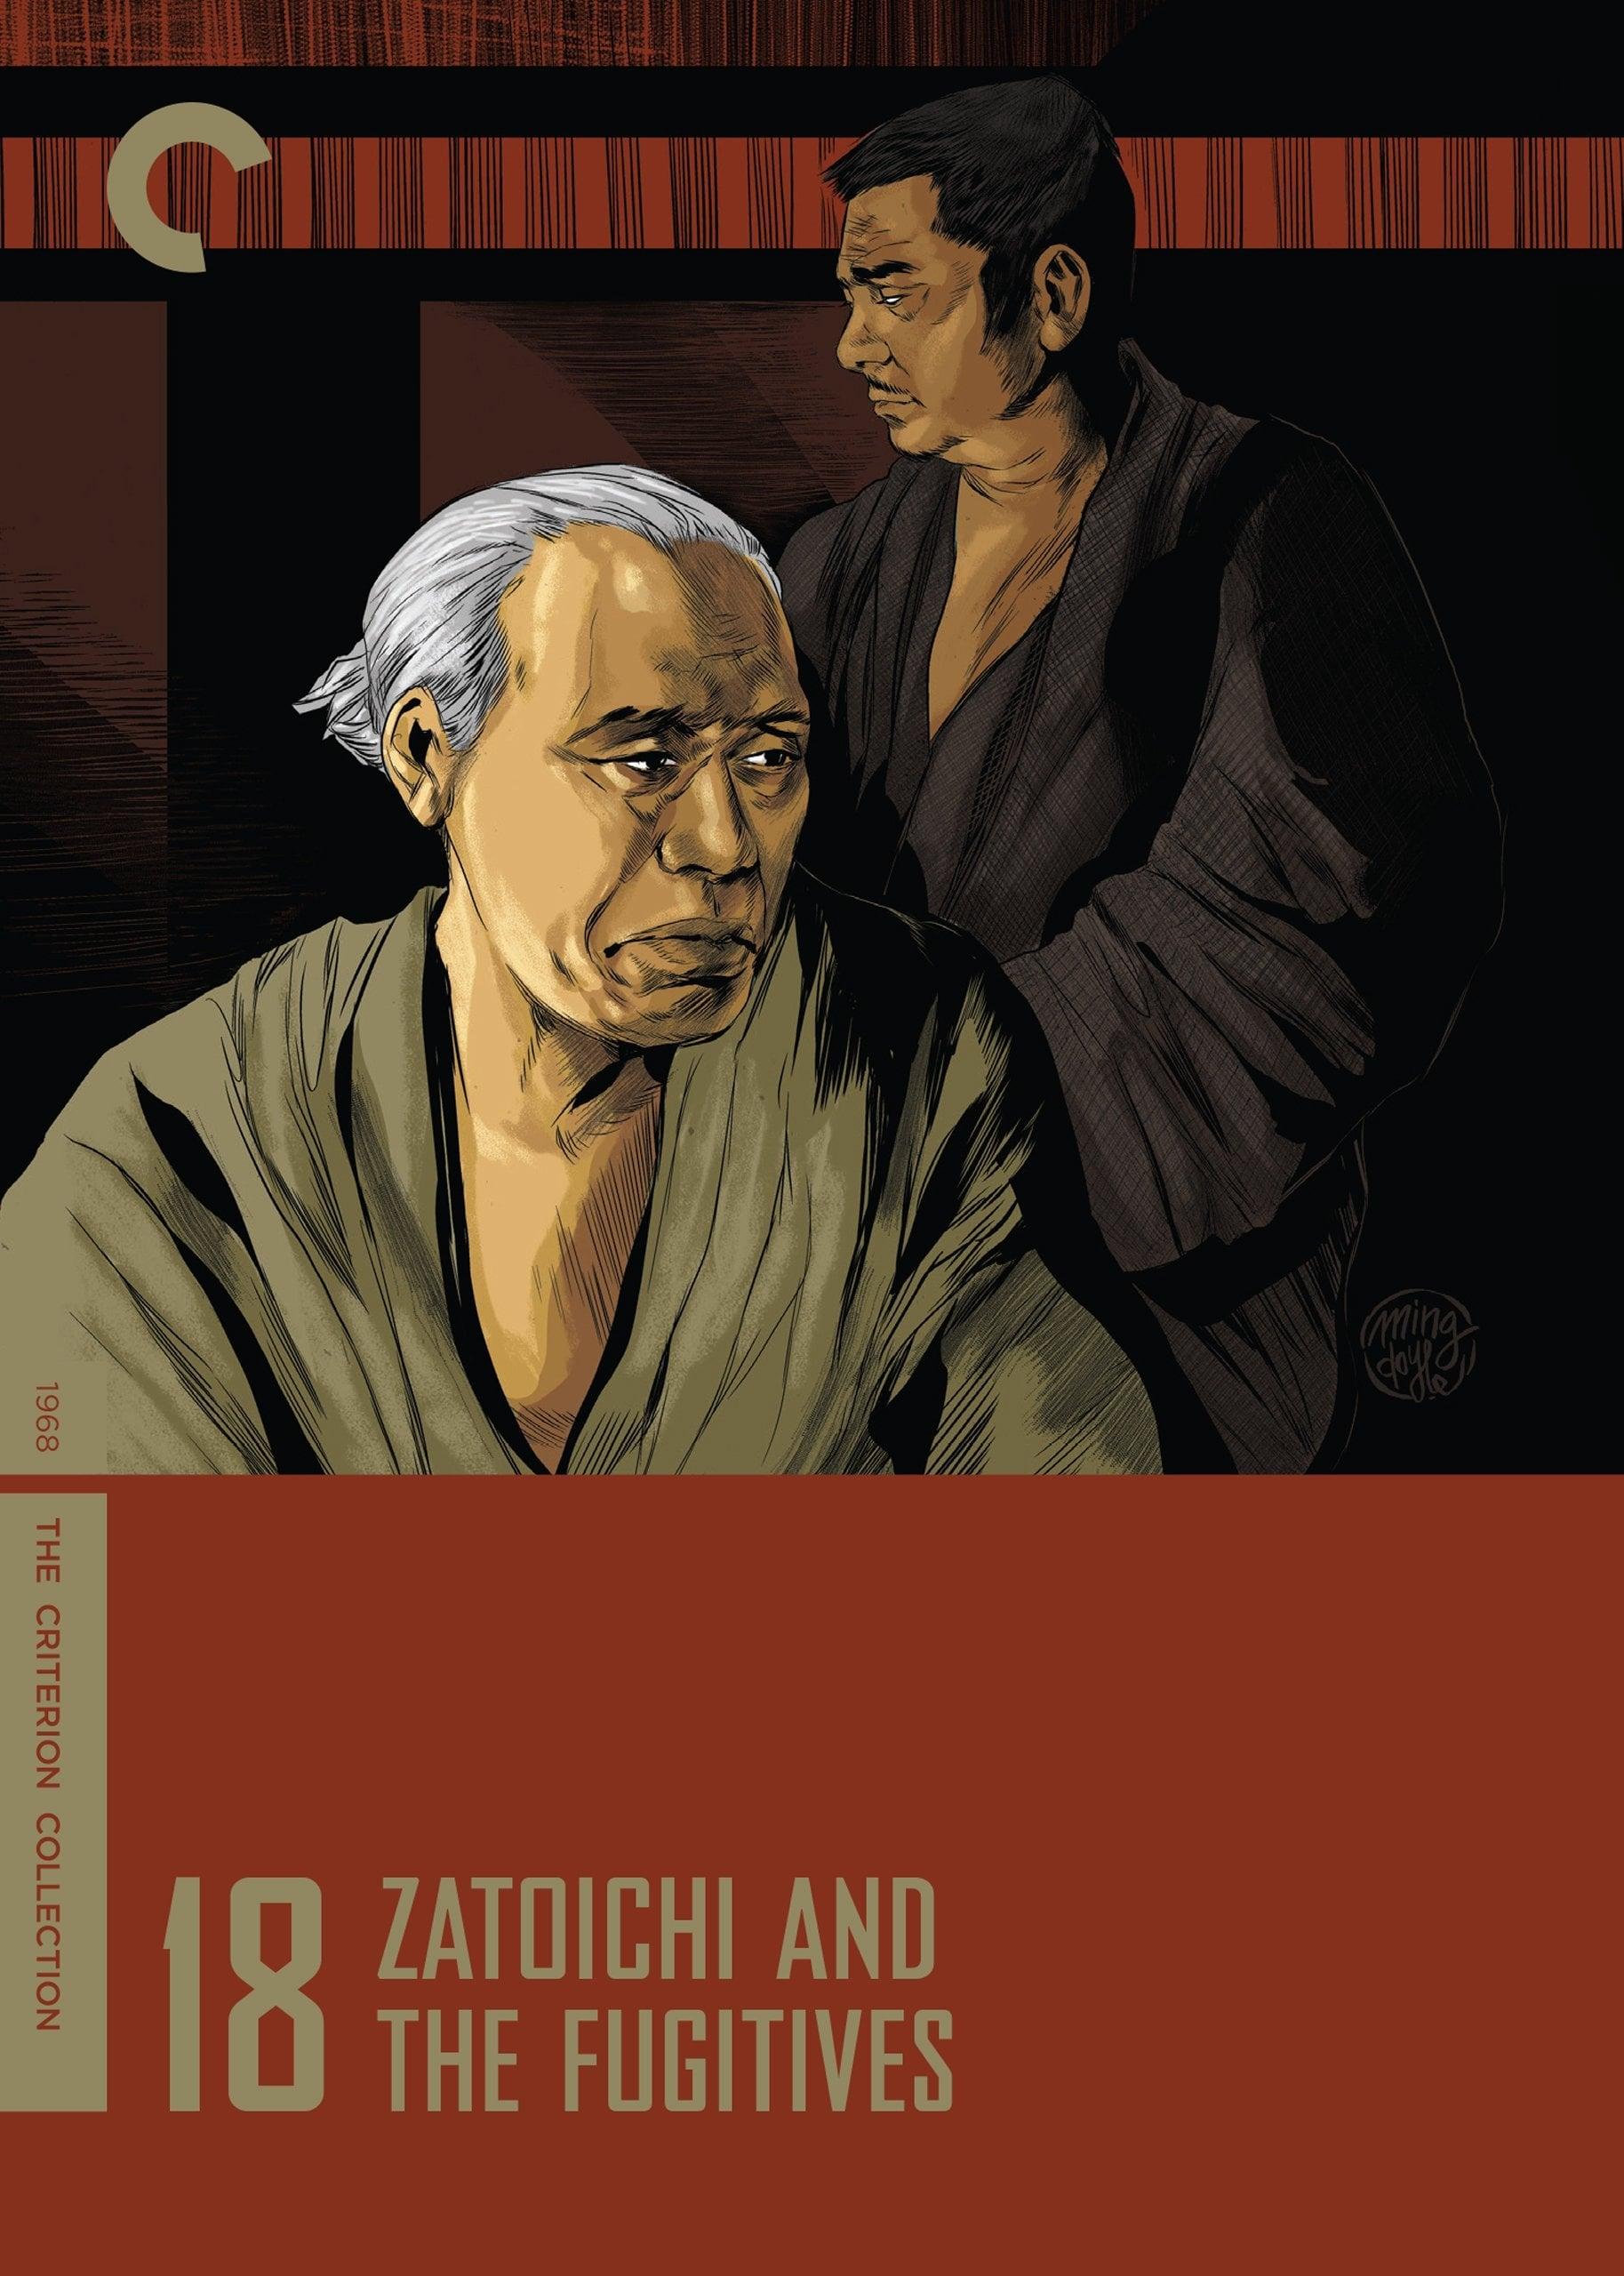 Zatoichi and the Fugitives poster